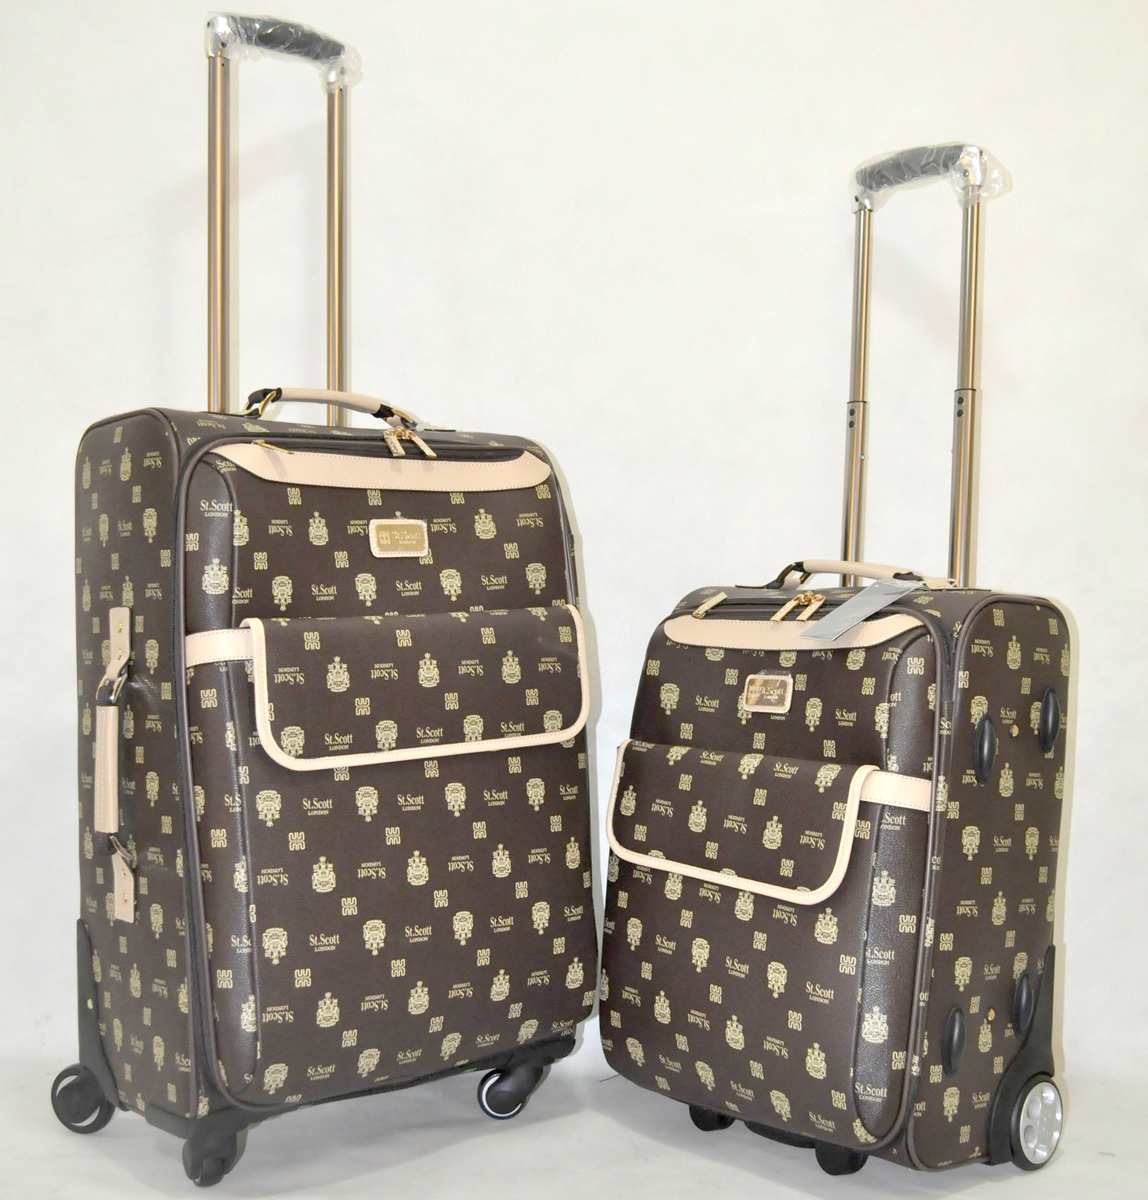 英国品牌优质拉杆箱棕色圣斯科特旅行箱出口欧美韩国高档行李箱包